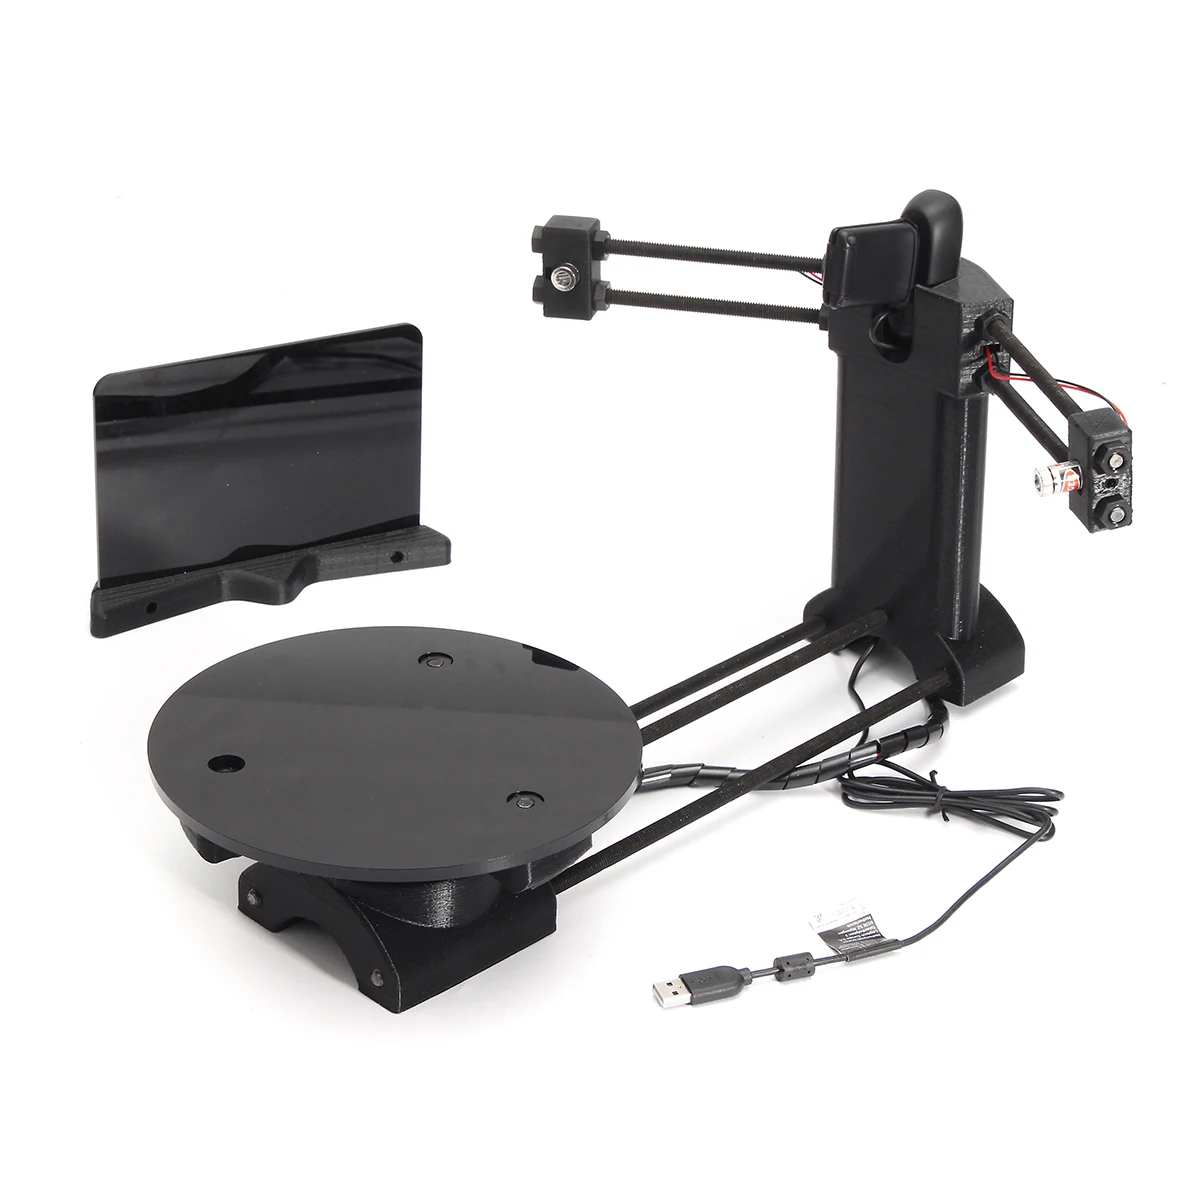 Ved navn Utroskab Rose Wholesale 3D Open Source DIY 3D Scanner kit Advanced Laser Scanner w/ C270  Camera Ciclop 3D From m.alibaba.com